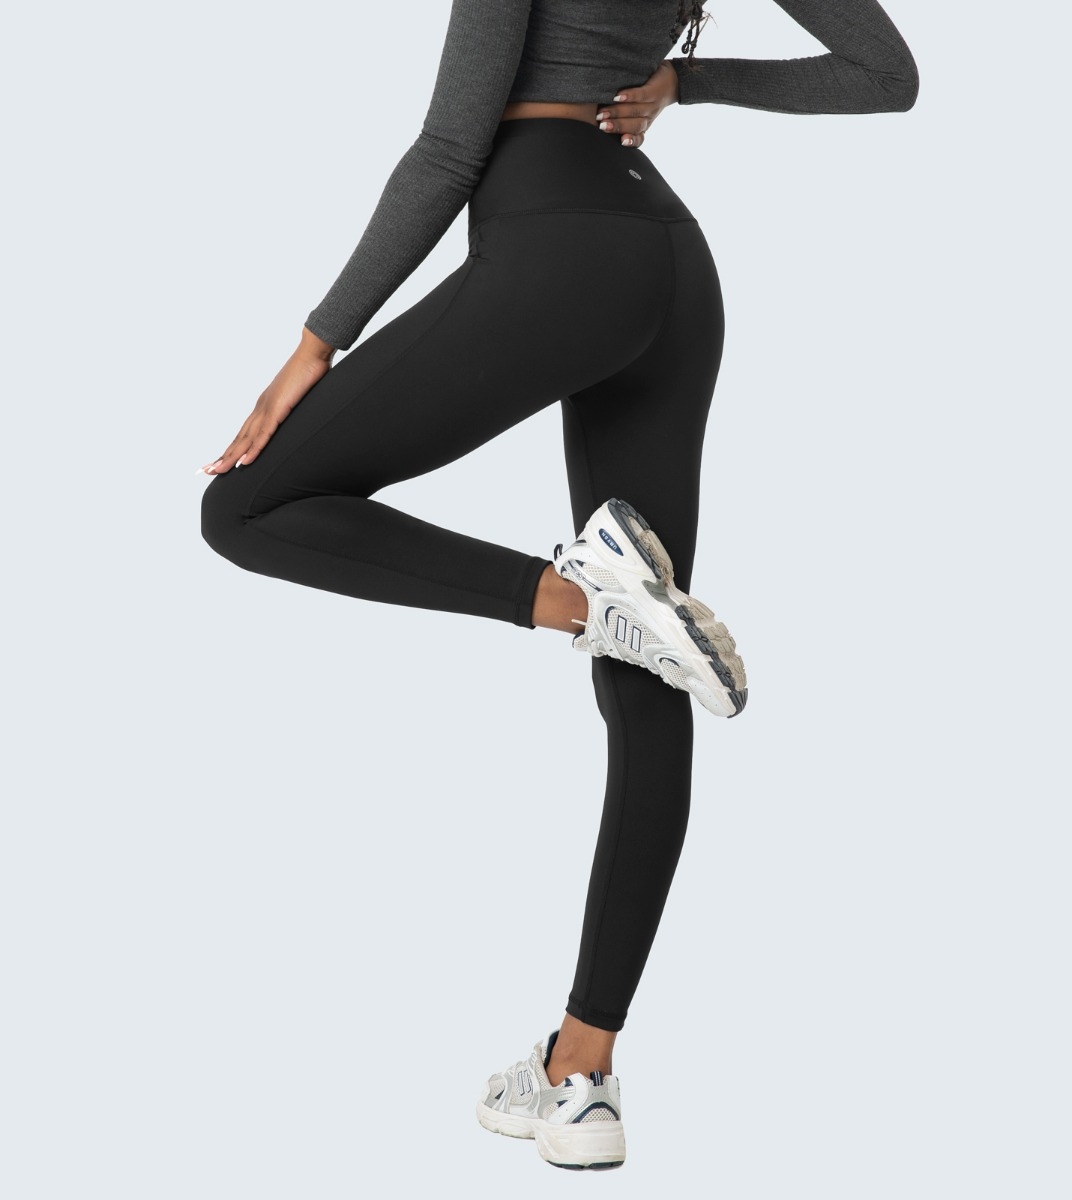 LAPASA Donna Leggings Yoga Vita Alta Opachi Contenitivi Pancia Traspiranti Pantaloni Sportivi L01A1/B1 L36A1/B1 